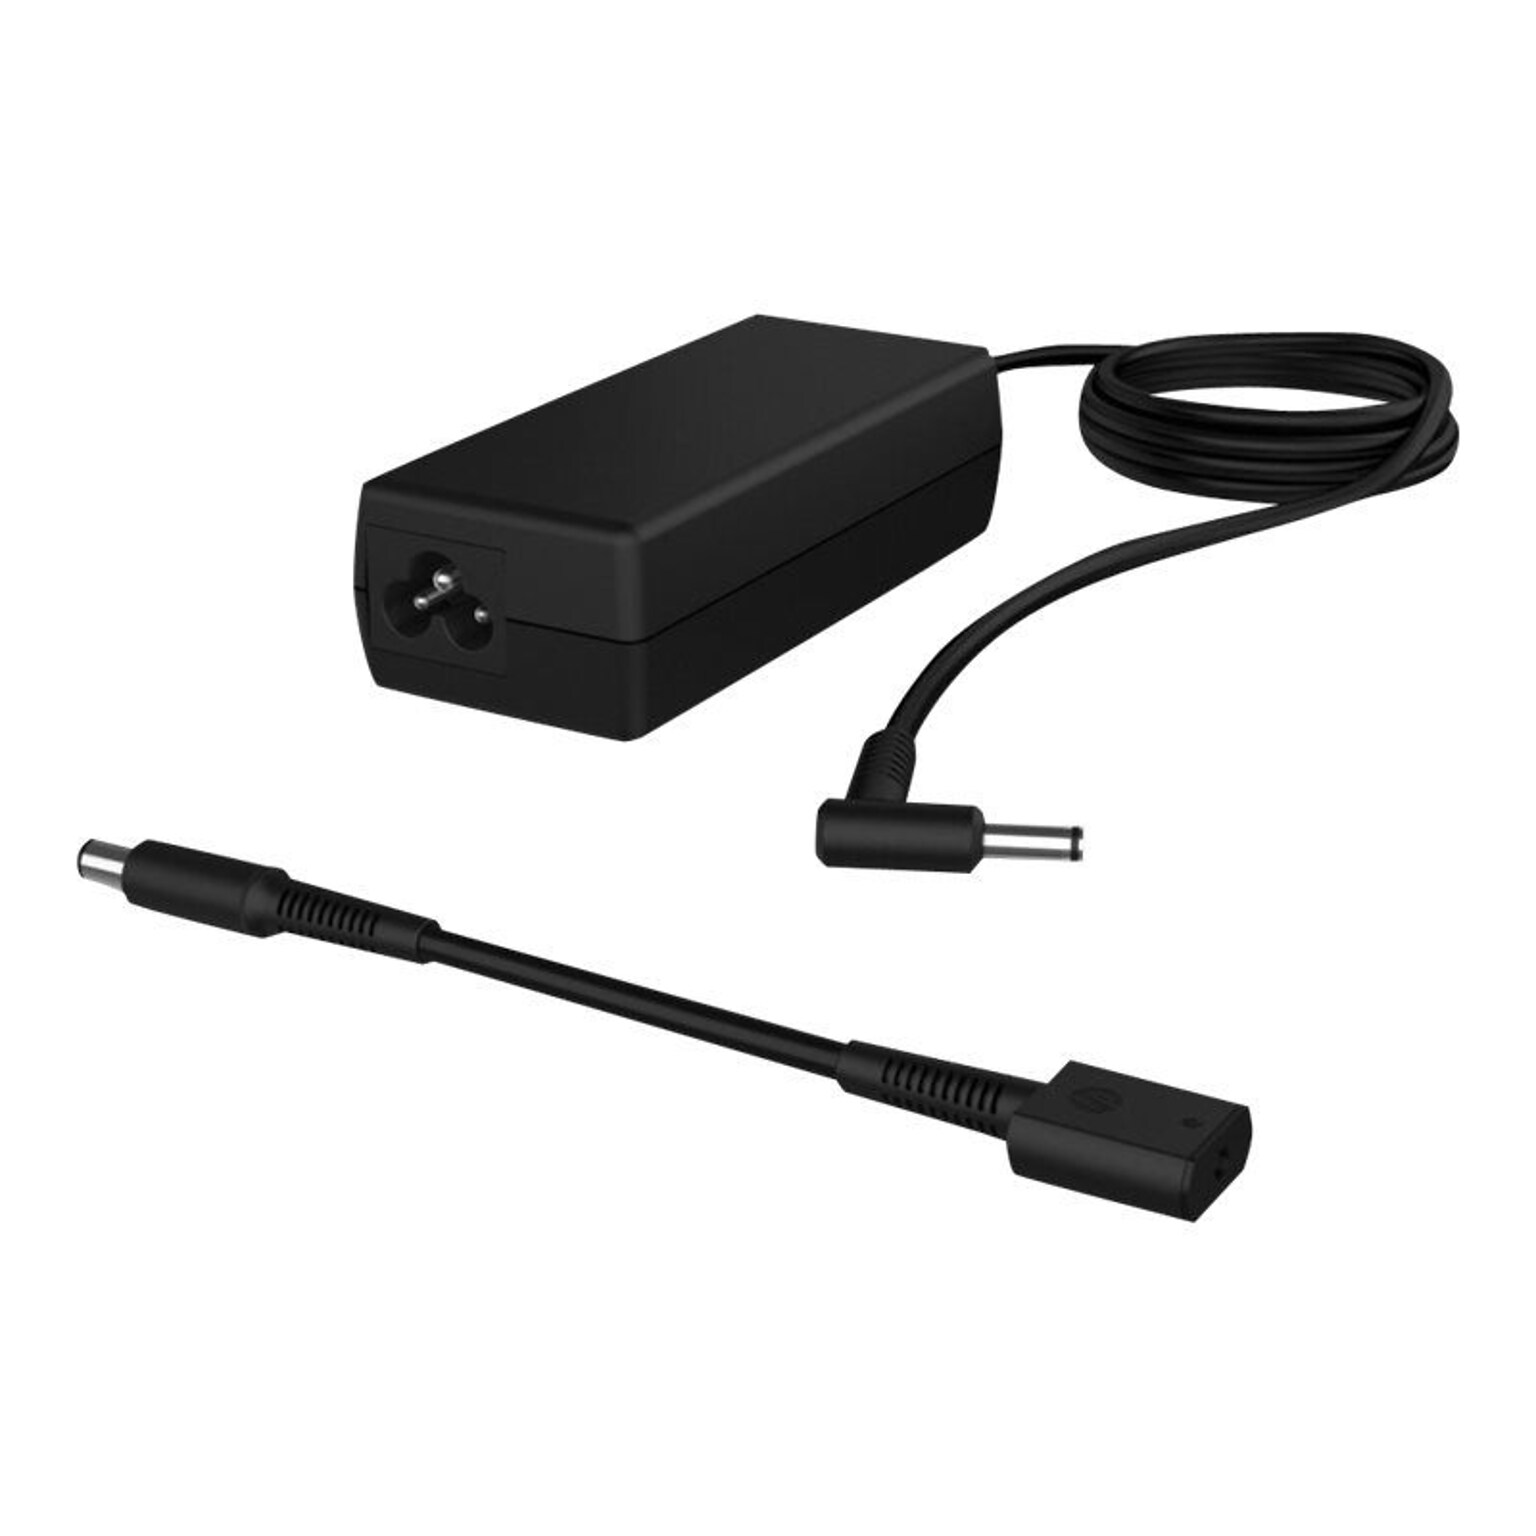 HP ® Smart Notebook AC Adapter; Black (H6Y89UT#ABA)